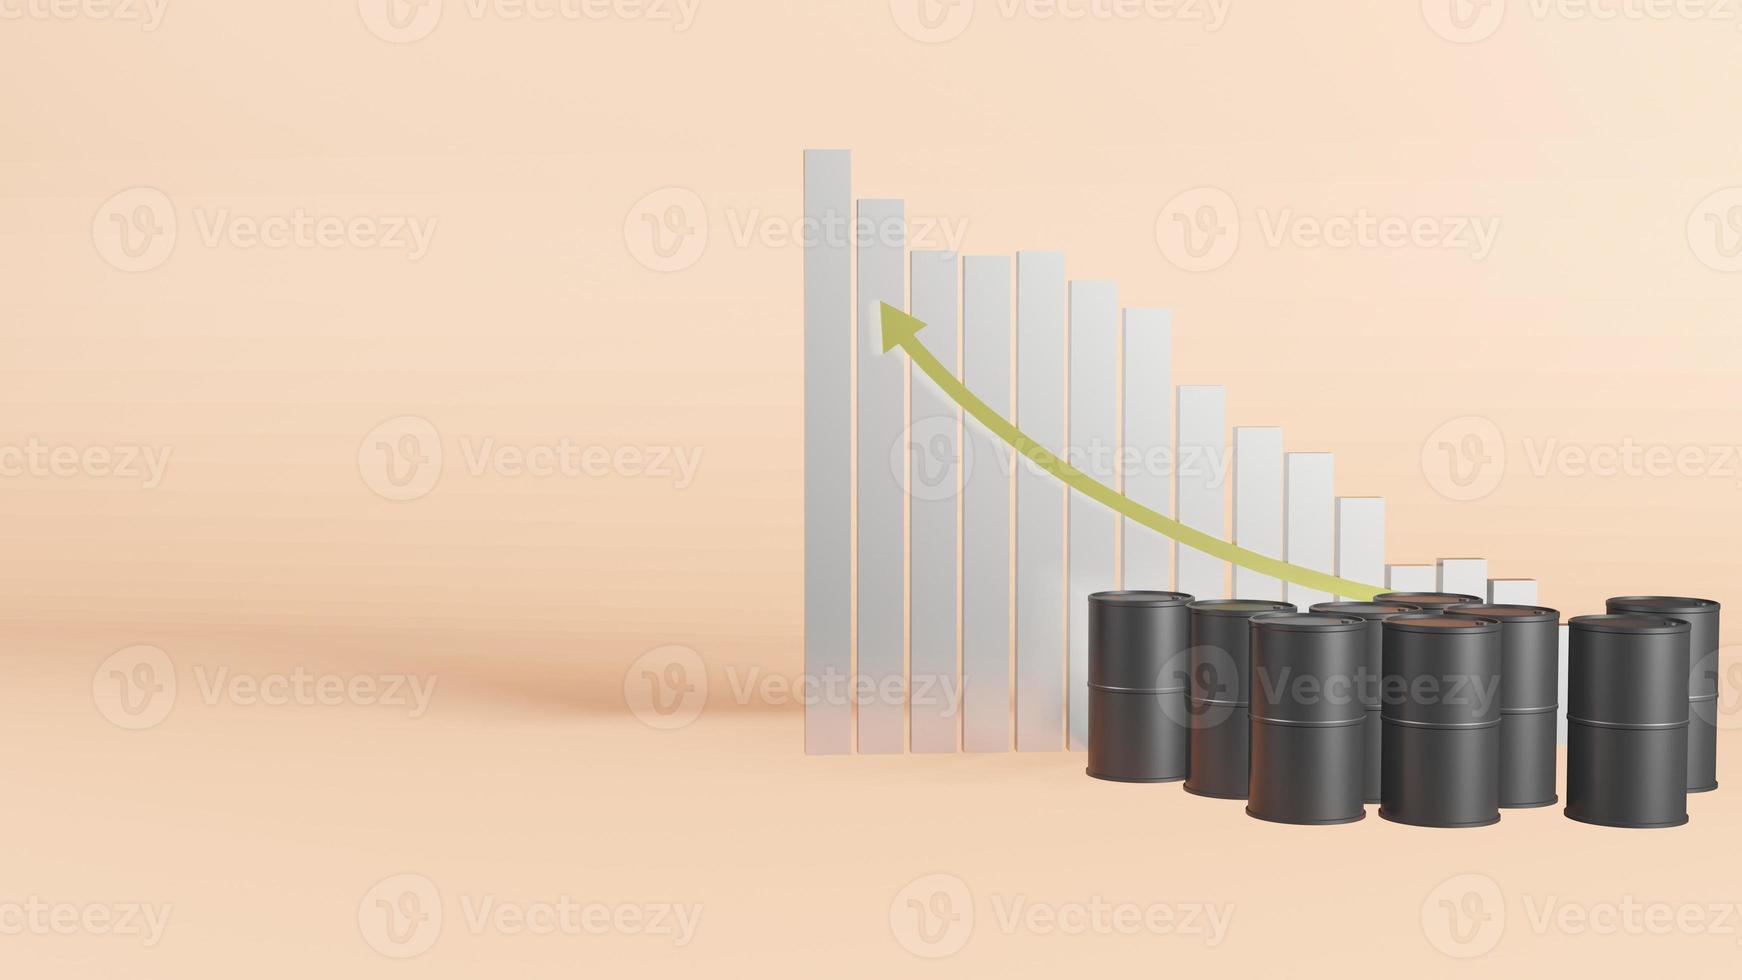 de svarta oljetankarna för petroleum eller energiinnehåll 3d-rendering foto